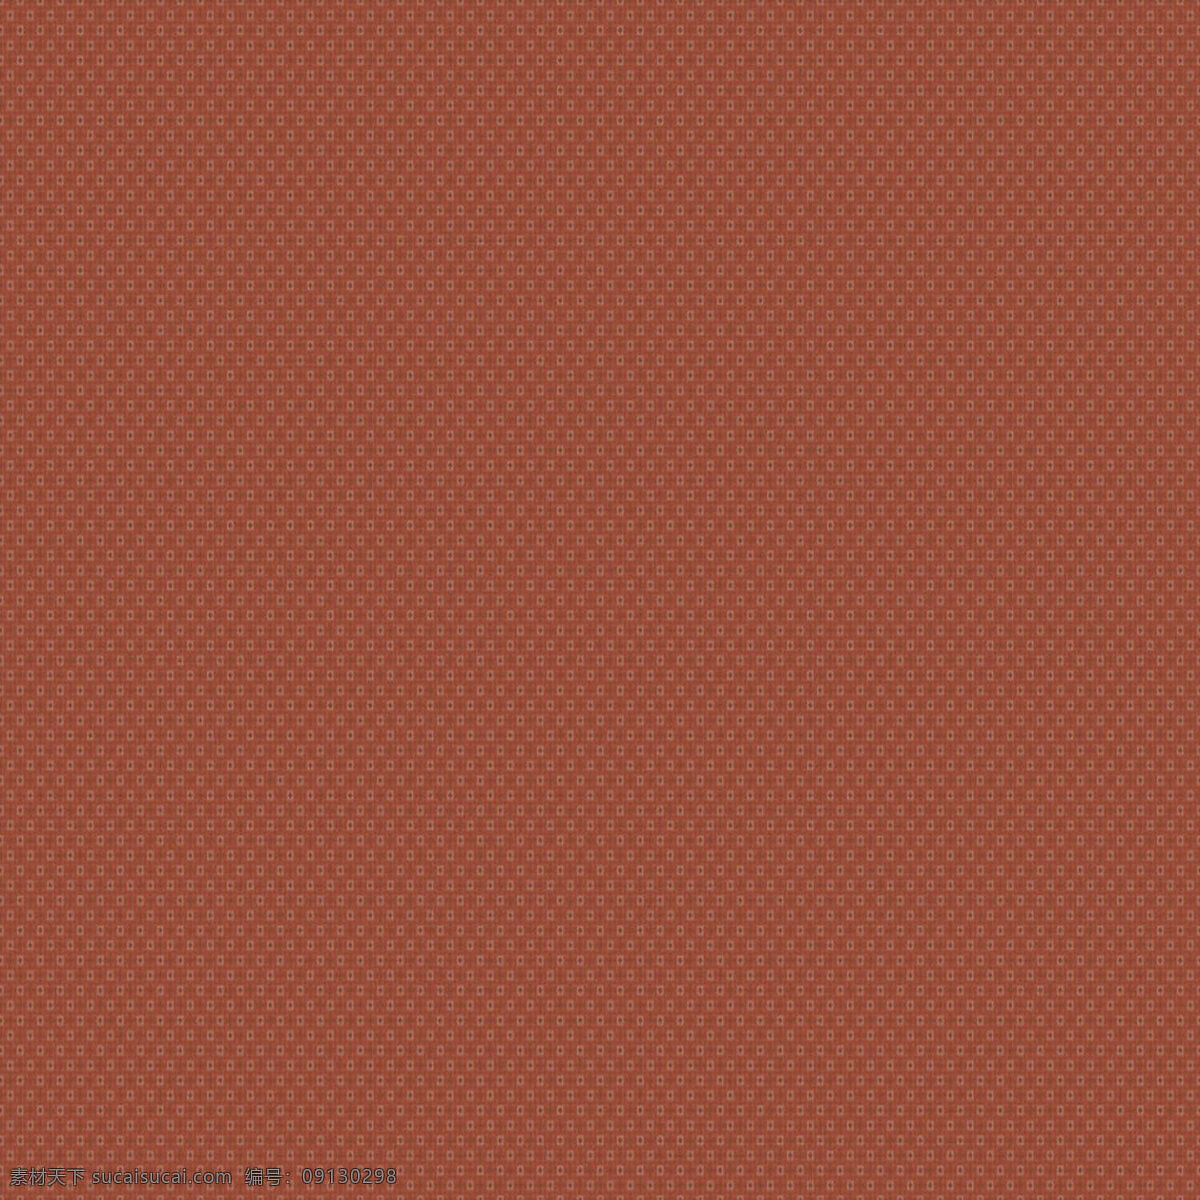 红 棕色 纹理 纹理素材 纹路背景 红棕色 红棕色素材 背景图片